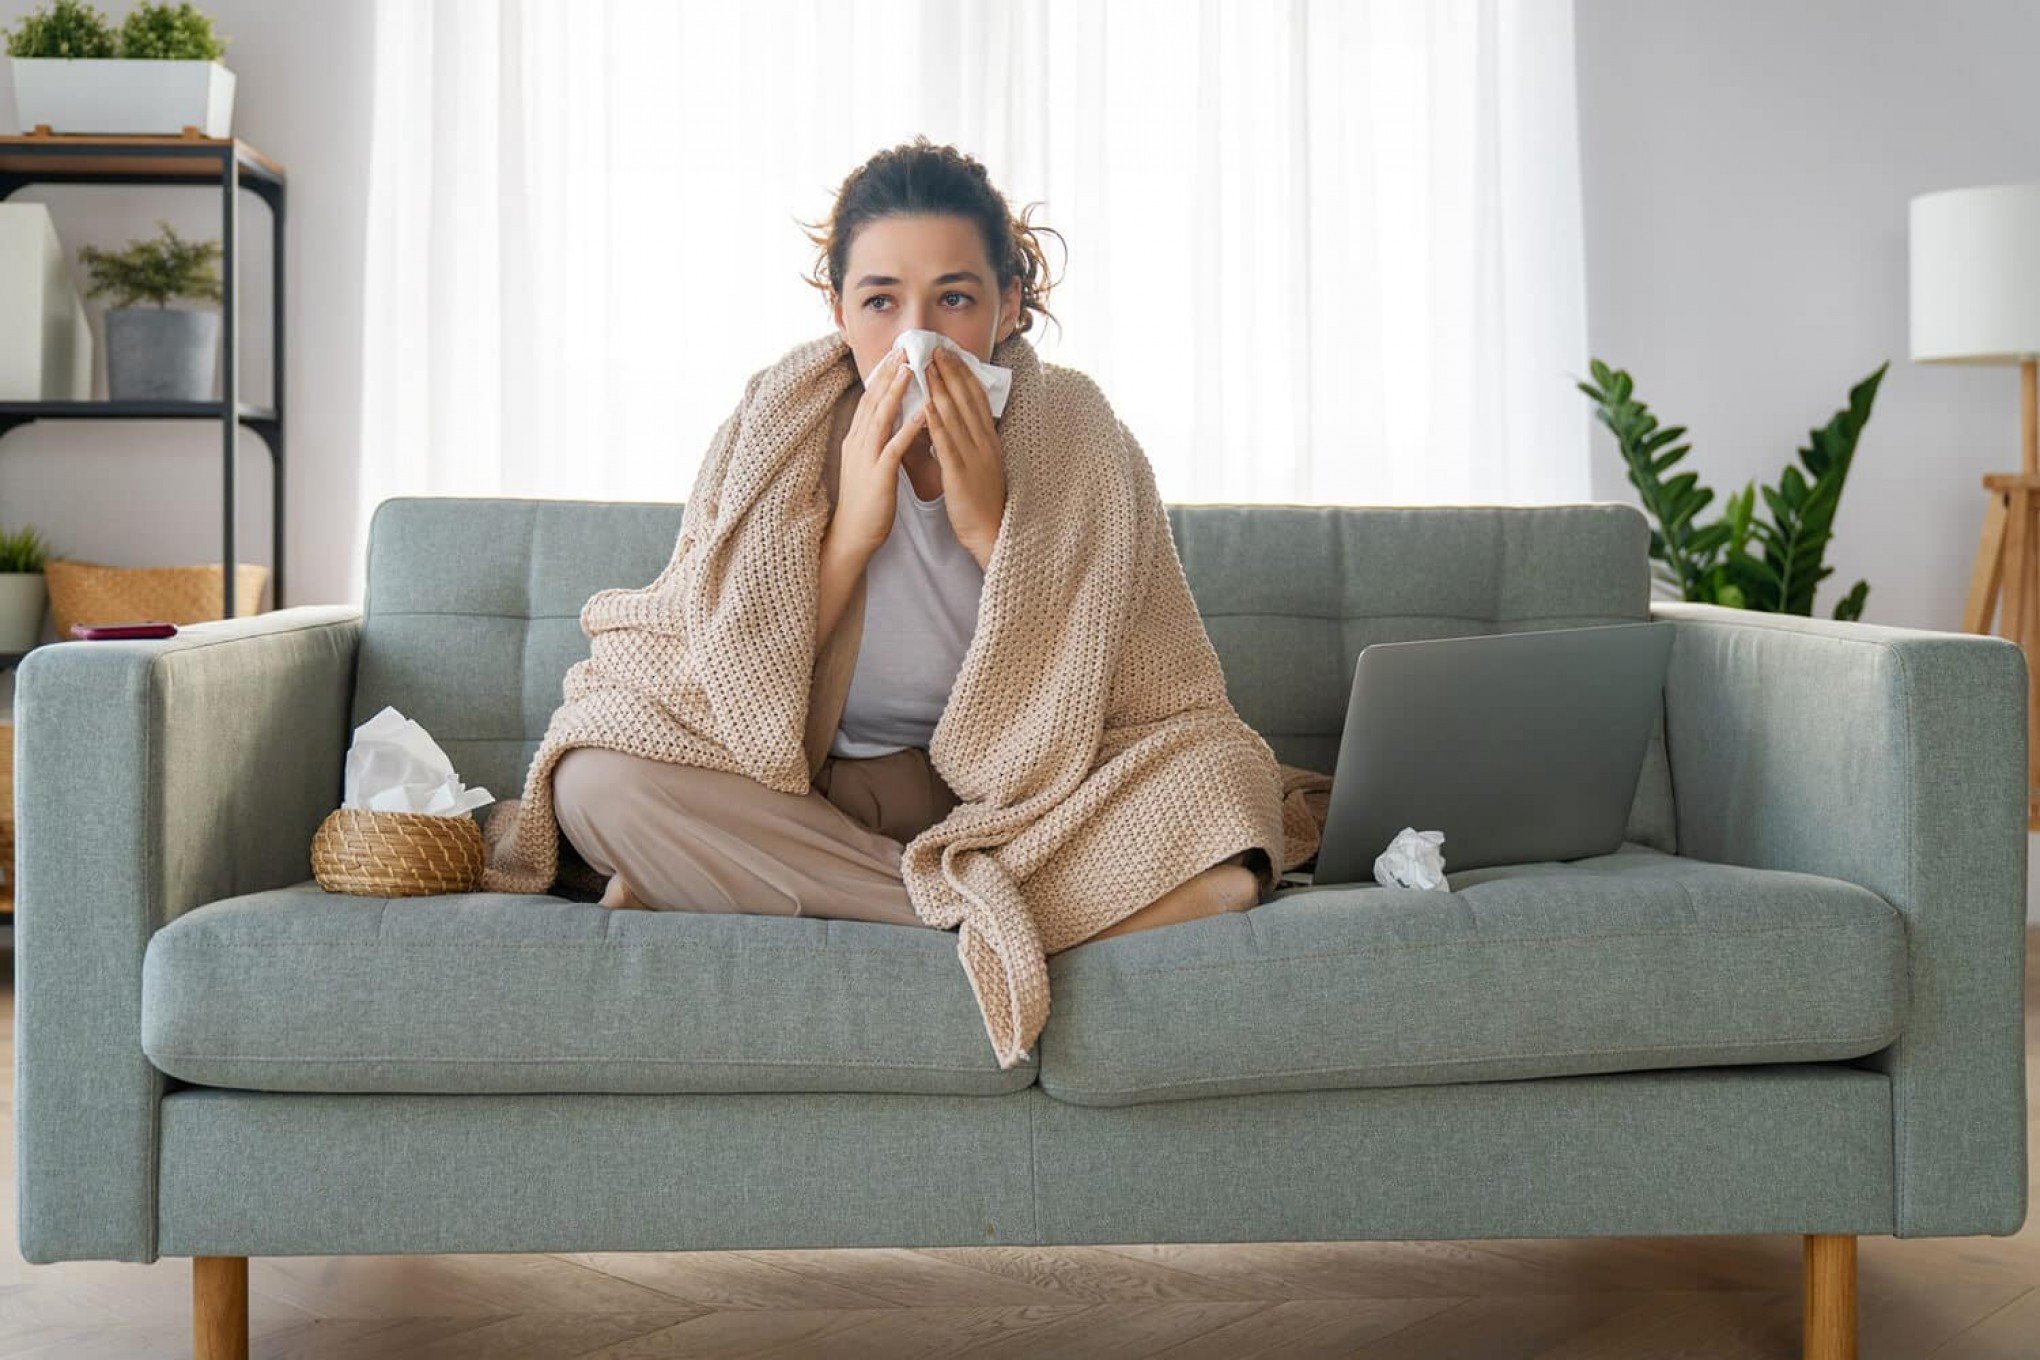 Como evitar que gripe vire pneumonia? Veja o que diz especialista